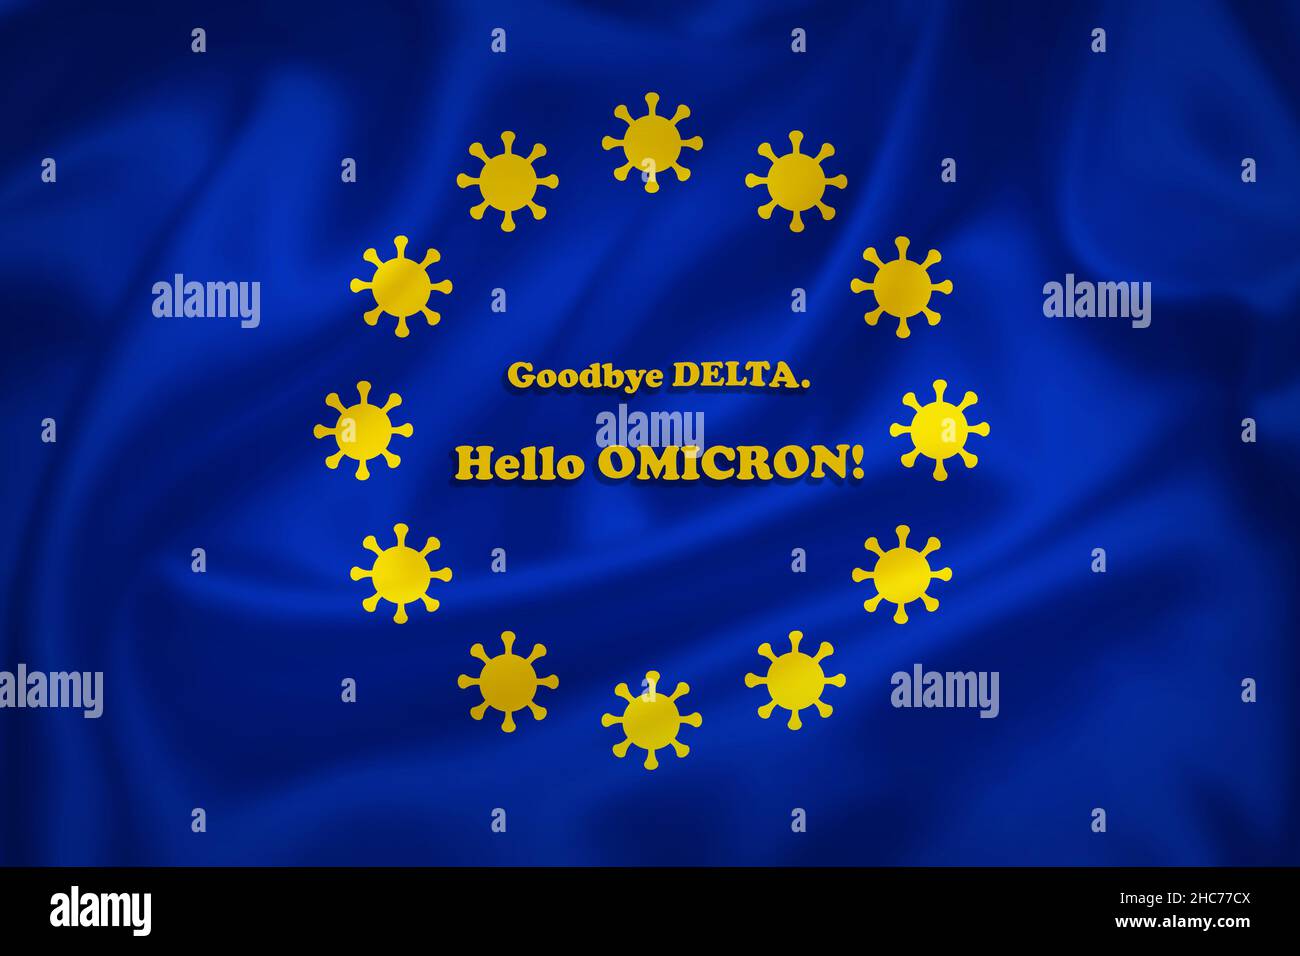 Illustrazione della bandiera dell'Unione europea con segni di coronavirus al posto delle stelle e nuovo testo della variante Omicront. Illustrazione della pandemia del Covid-19 nell'UE. Foto Stock